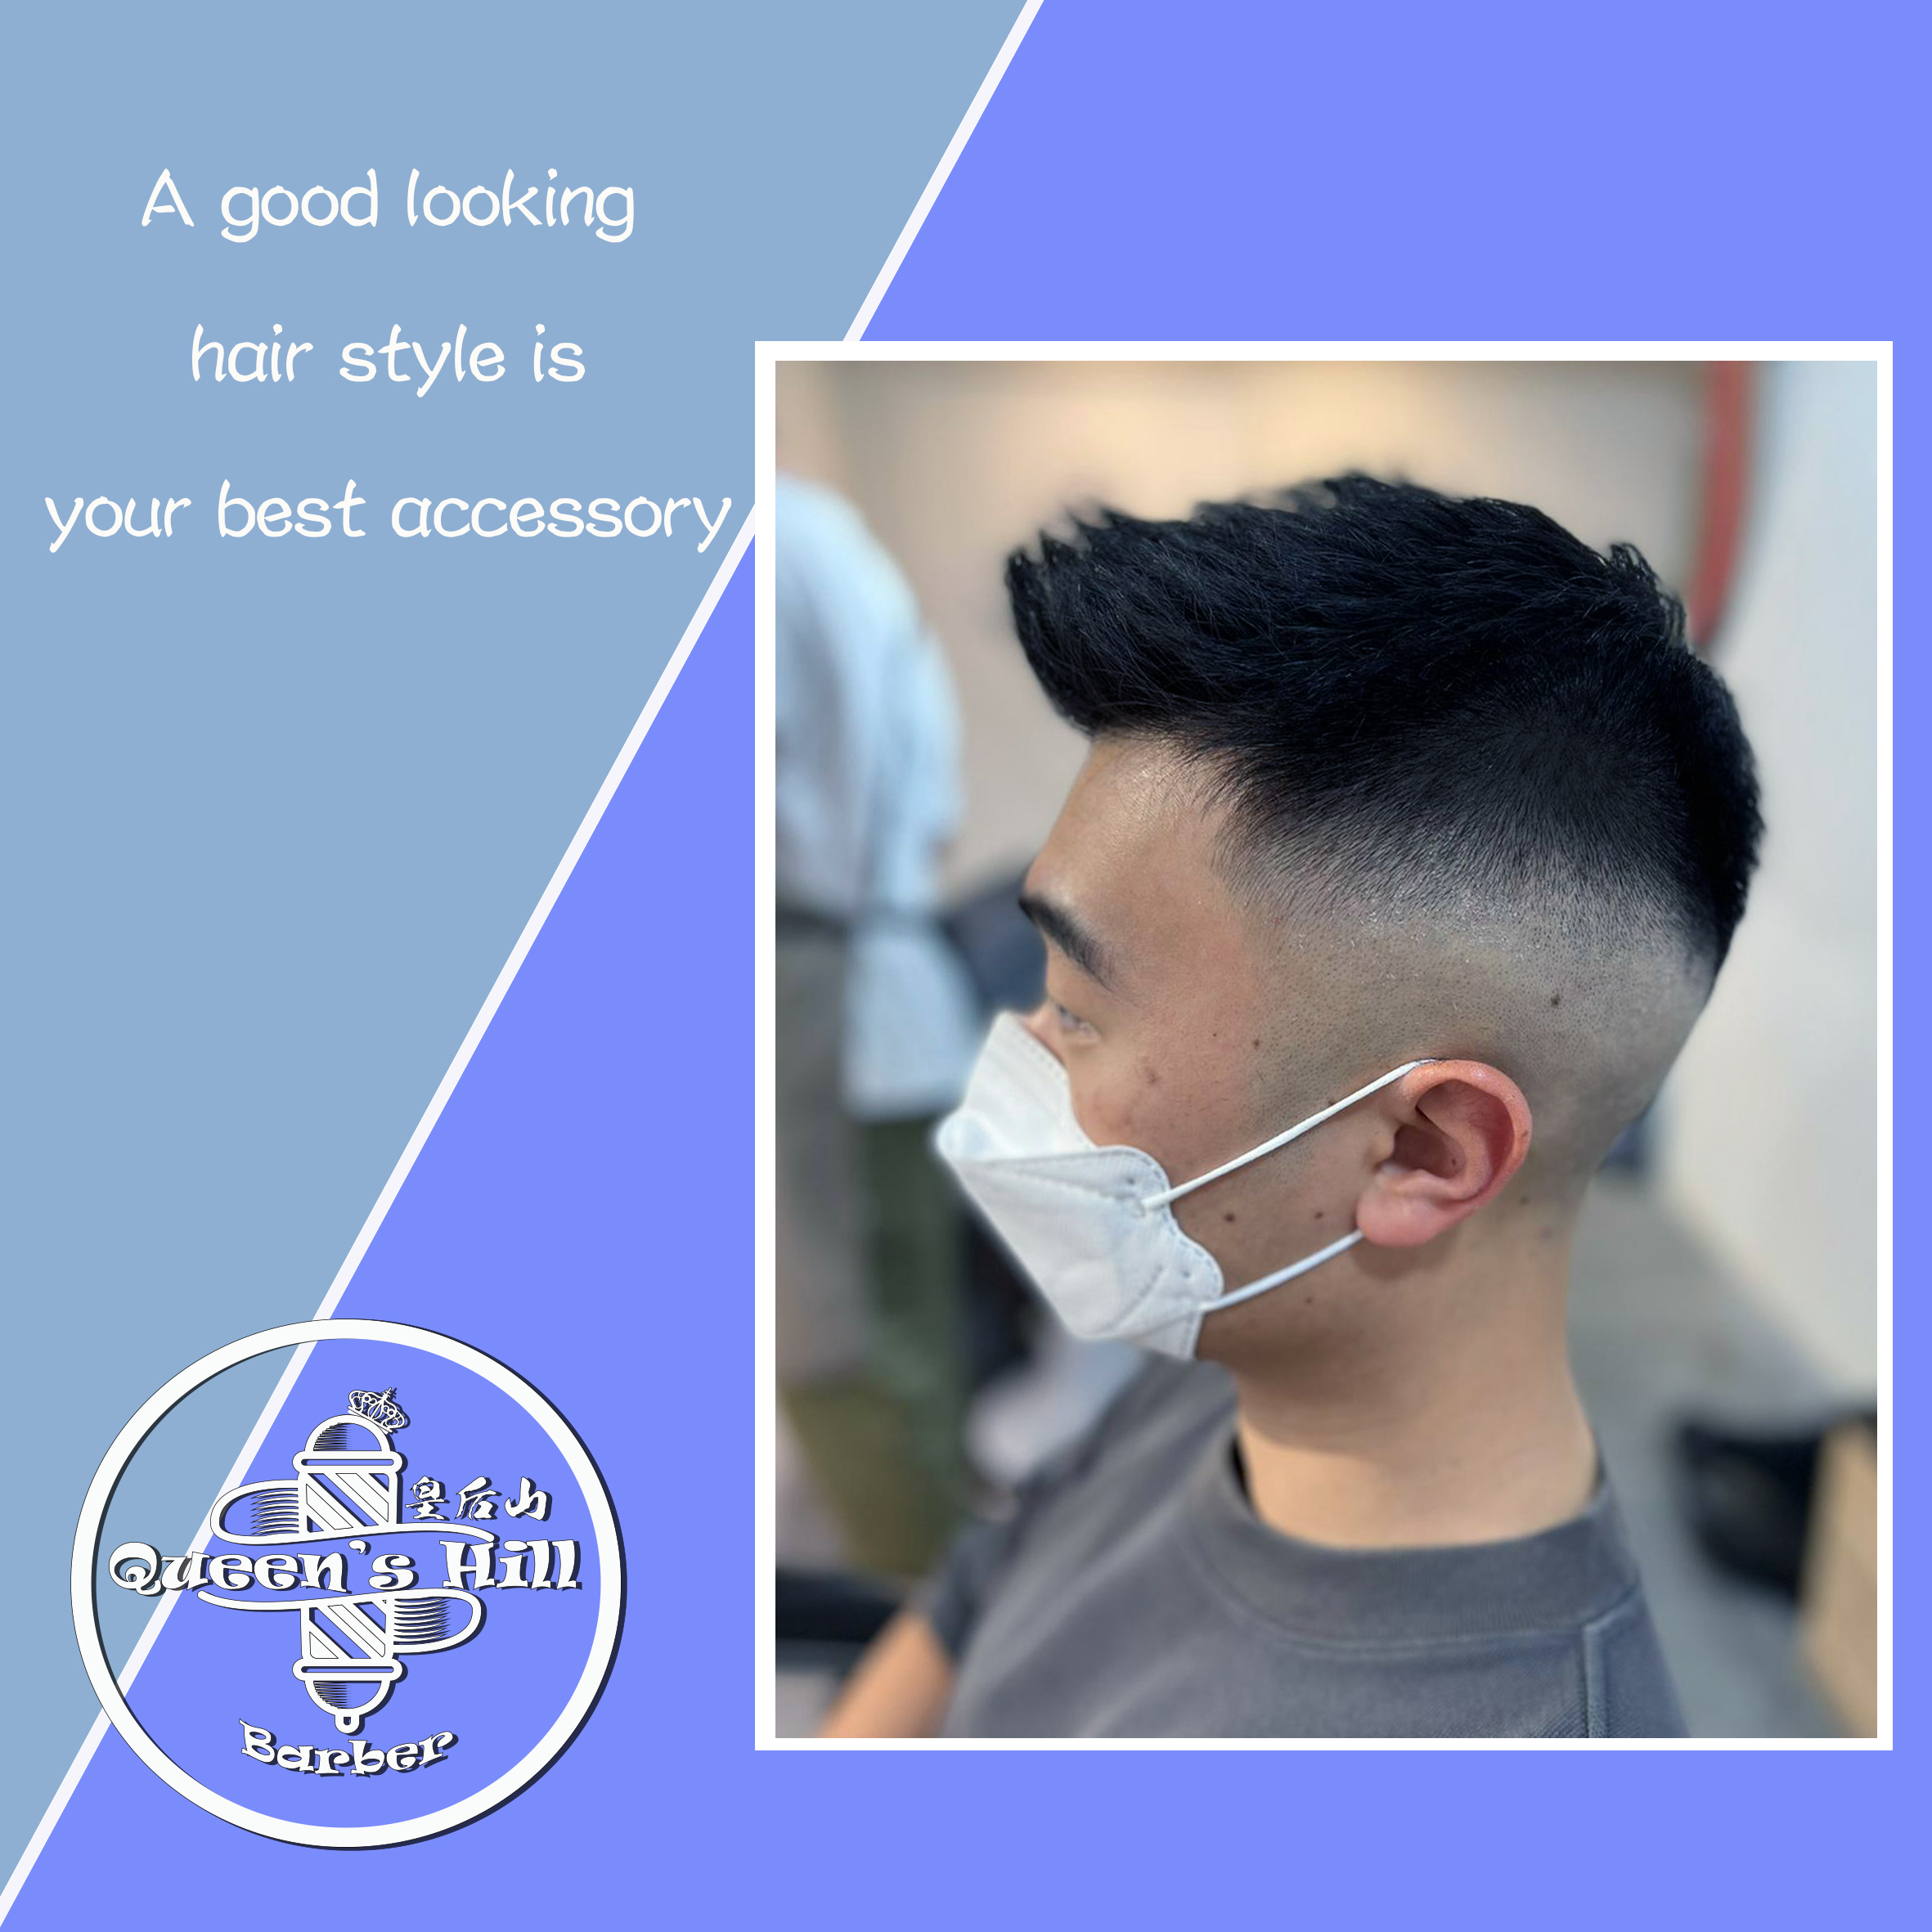 作品參考 / 最新消息:Hair cut & Styling services $120